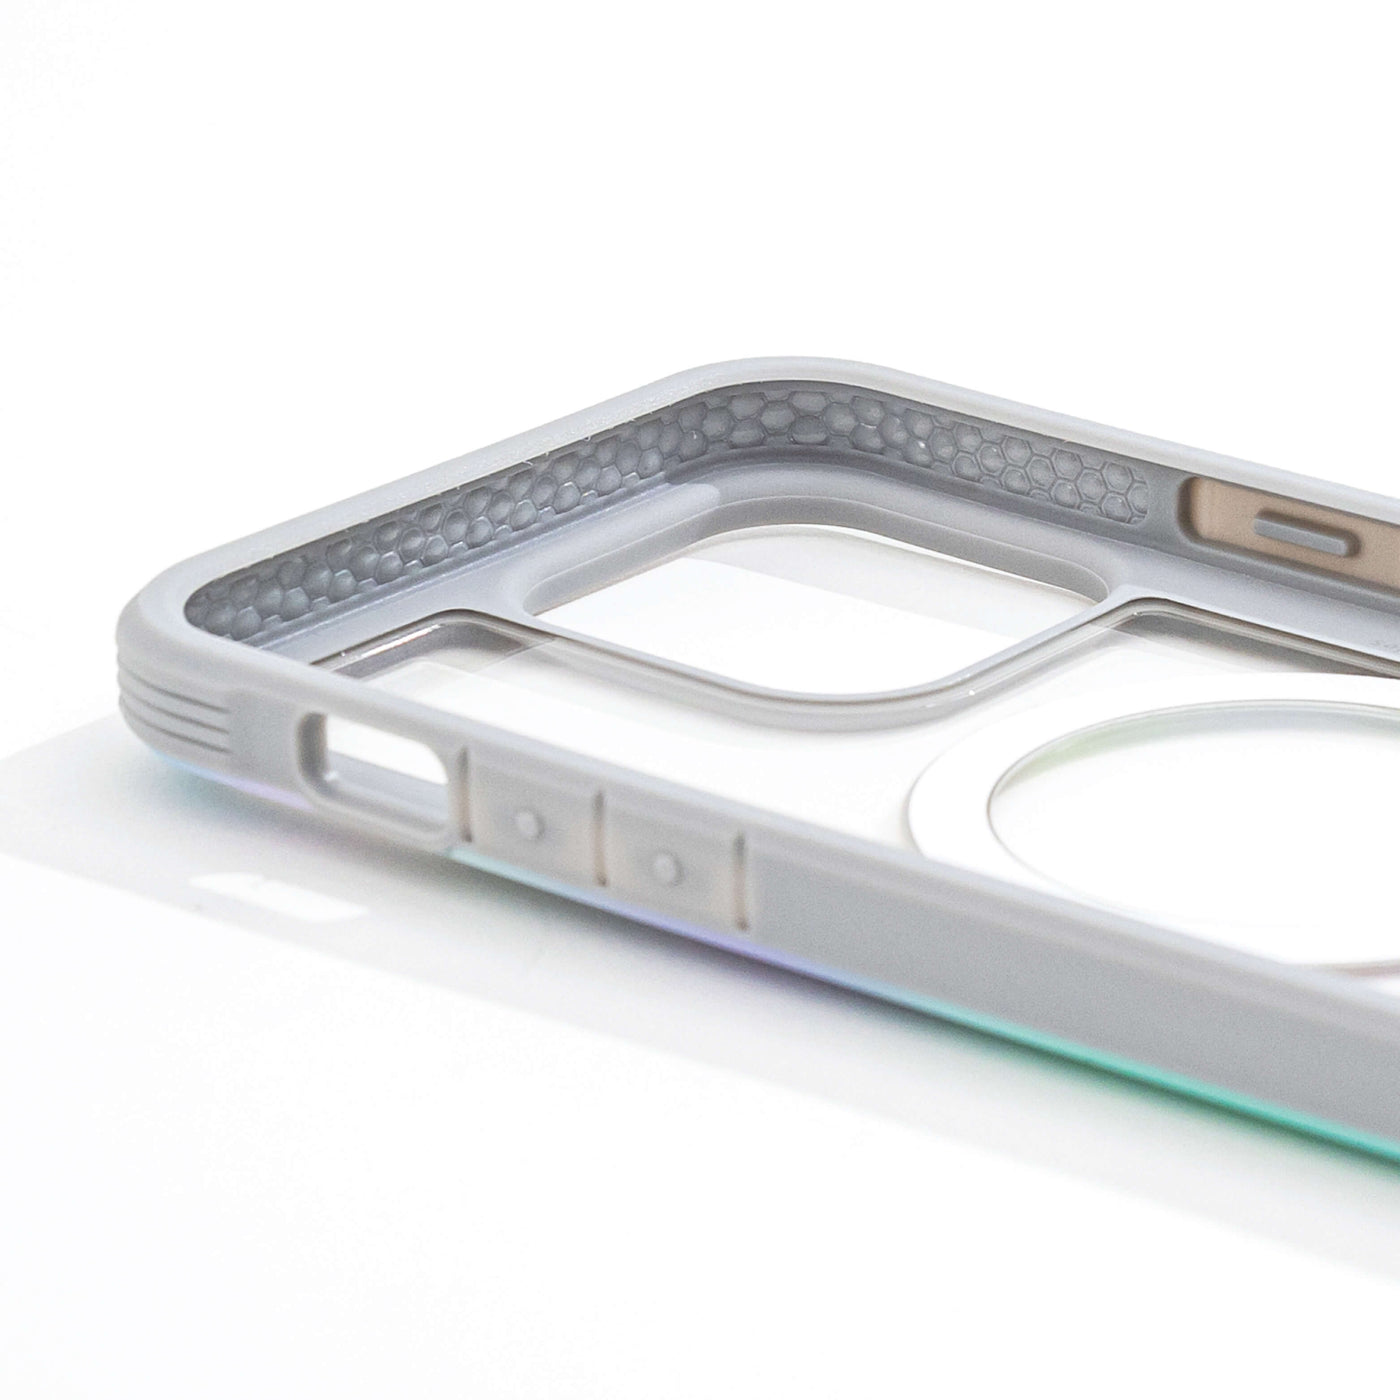 iPhone 14 Pro Max / iPhone 13 Pro Max Case - Shield 2.0 Quartz